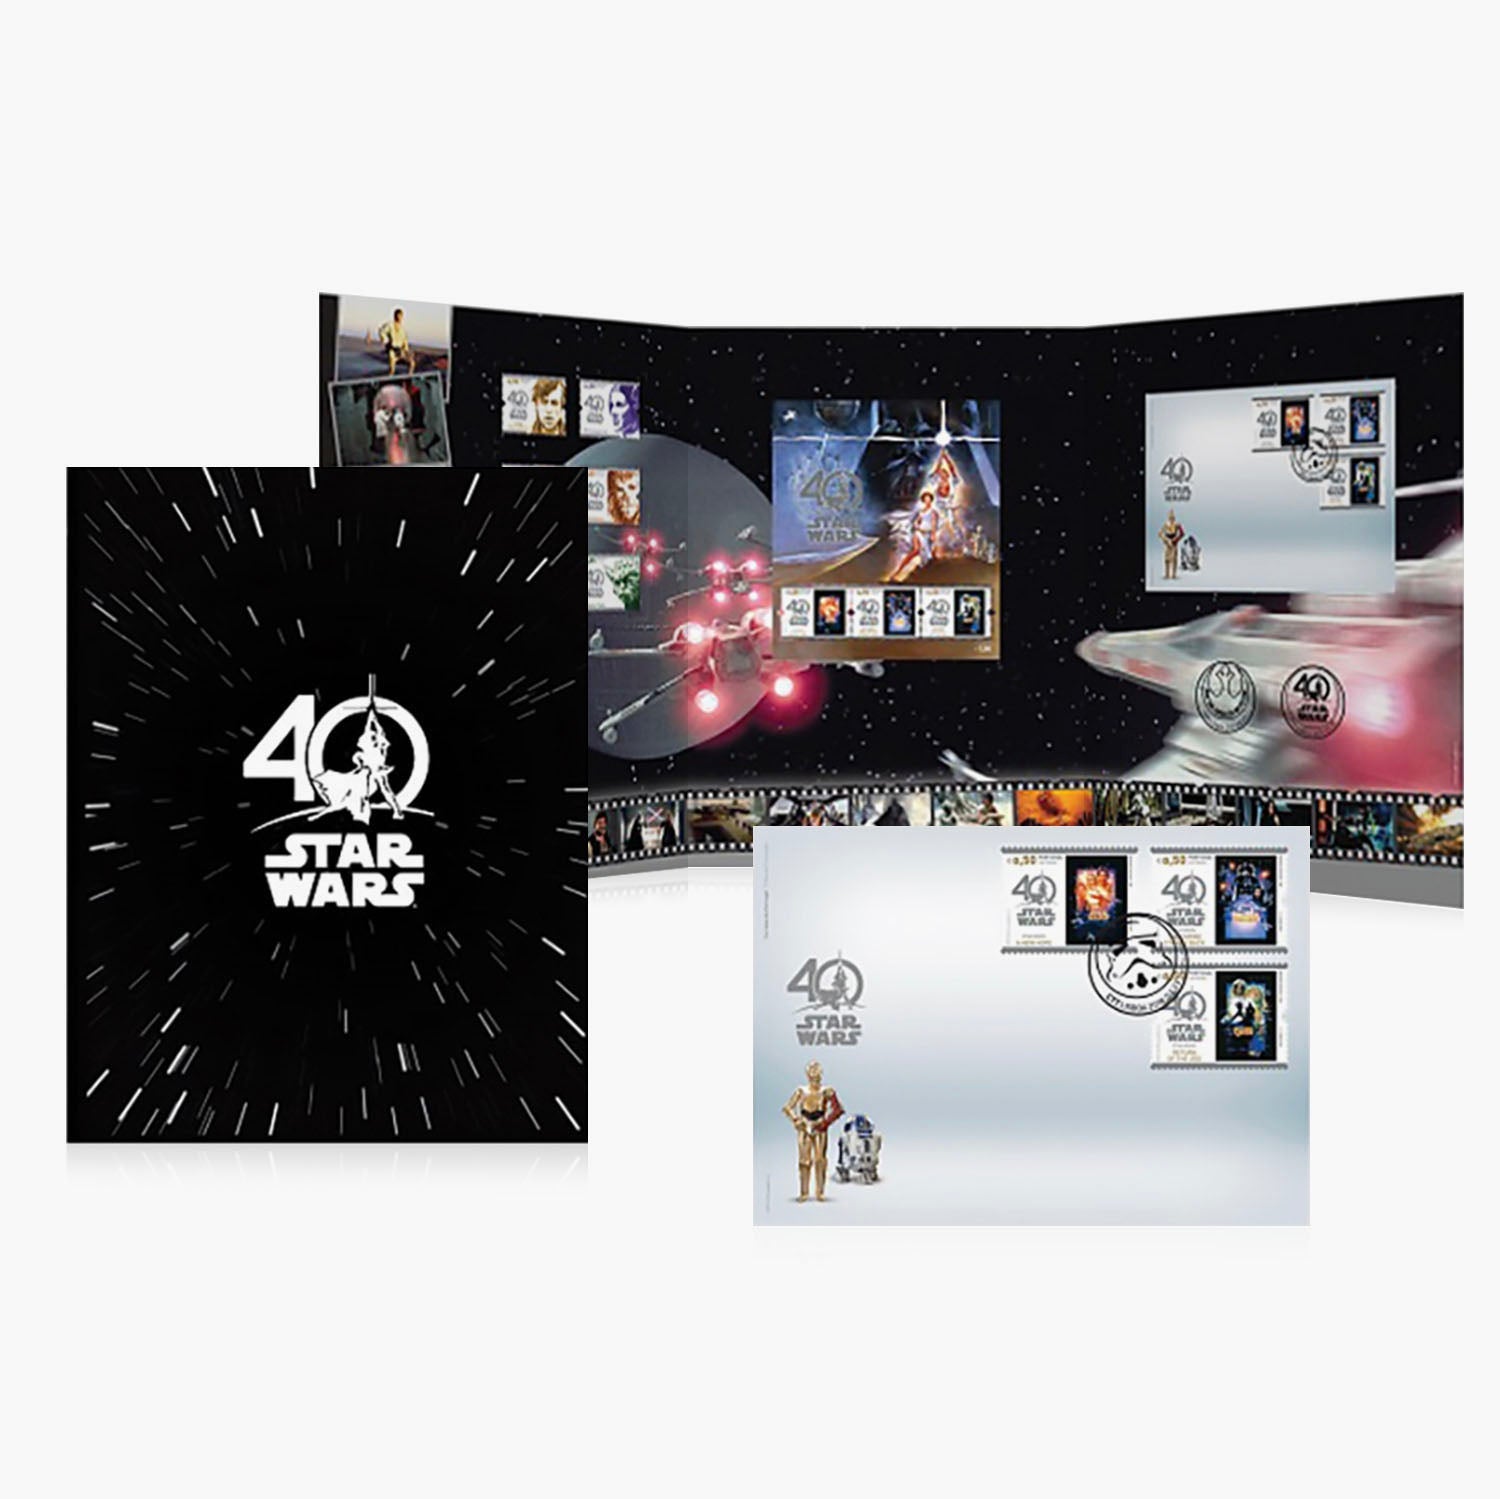 Ensemble de pièces et de timbres en argent massif pour l'anniversaire de Star Wars